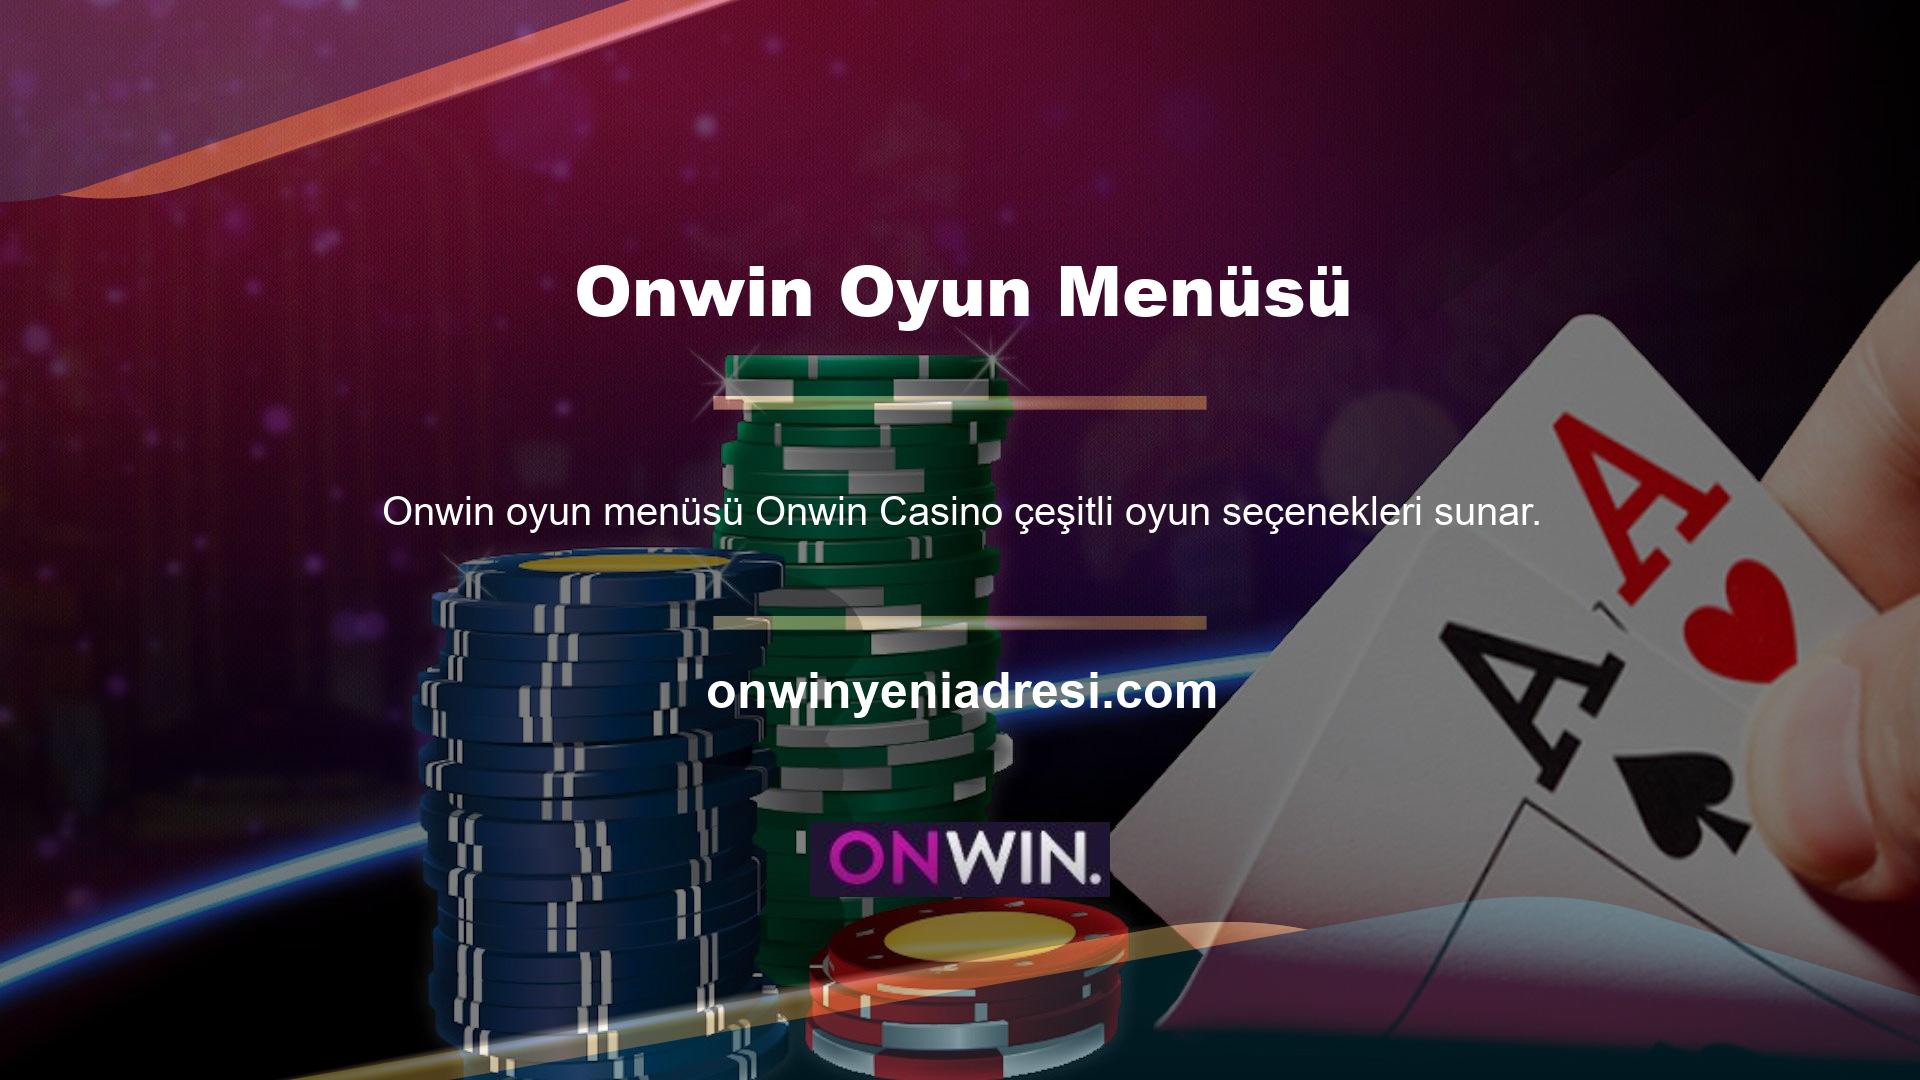 Onwin Casino'da video slotlar, günlük Jack potlar, canlı casino, klasik slotlar, Jack potlar, masa oyunları, Türk pokeri ve diğer oyun başlıklarında binlerce oyun bulabilirsiniz